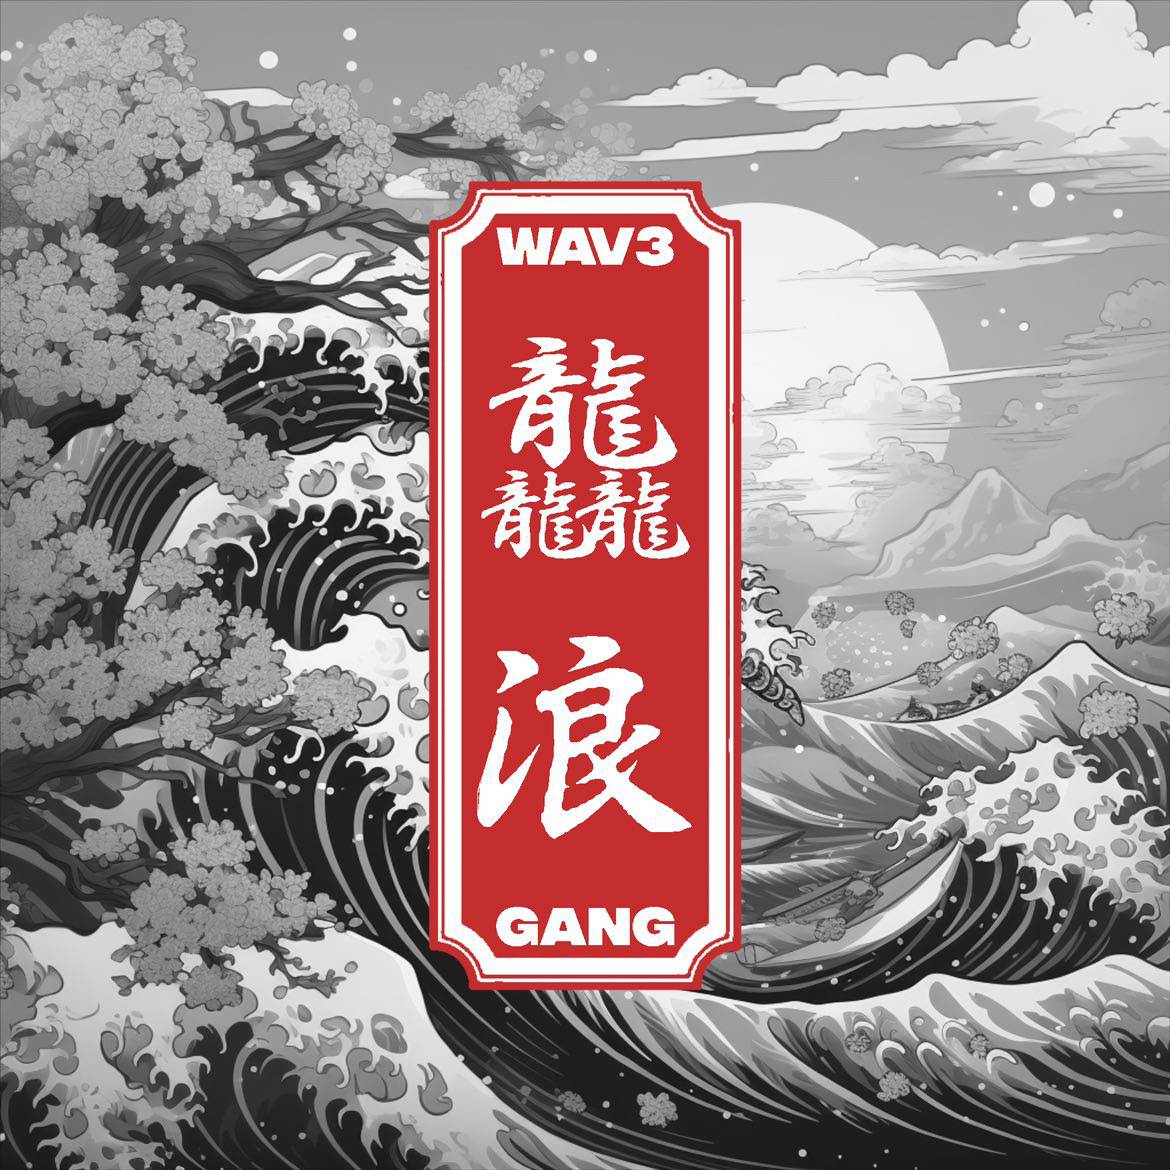 龘浪 Wav3 Gang